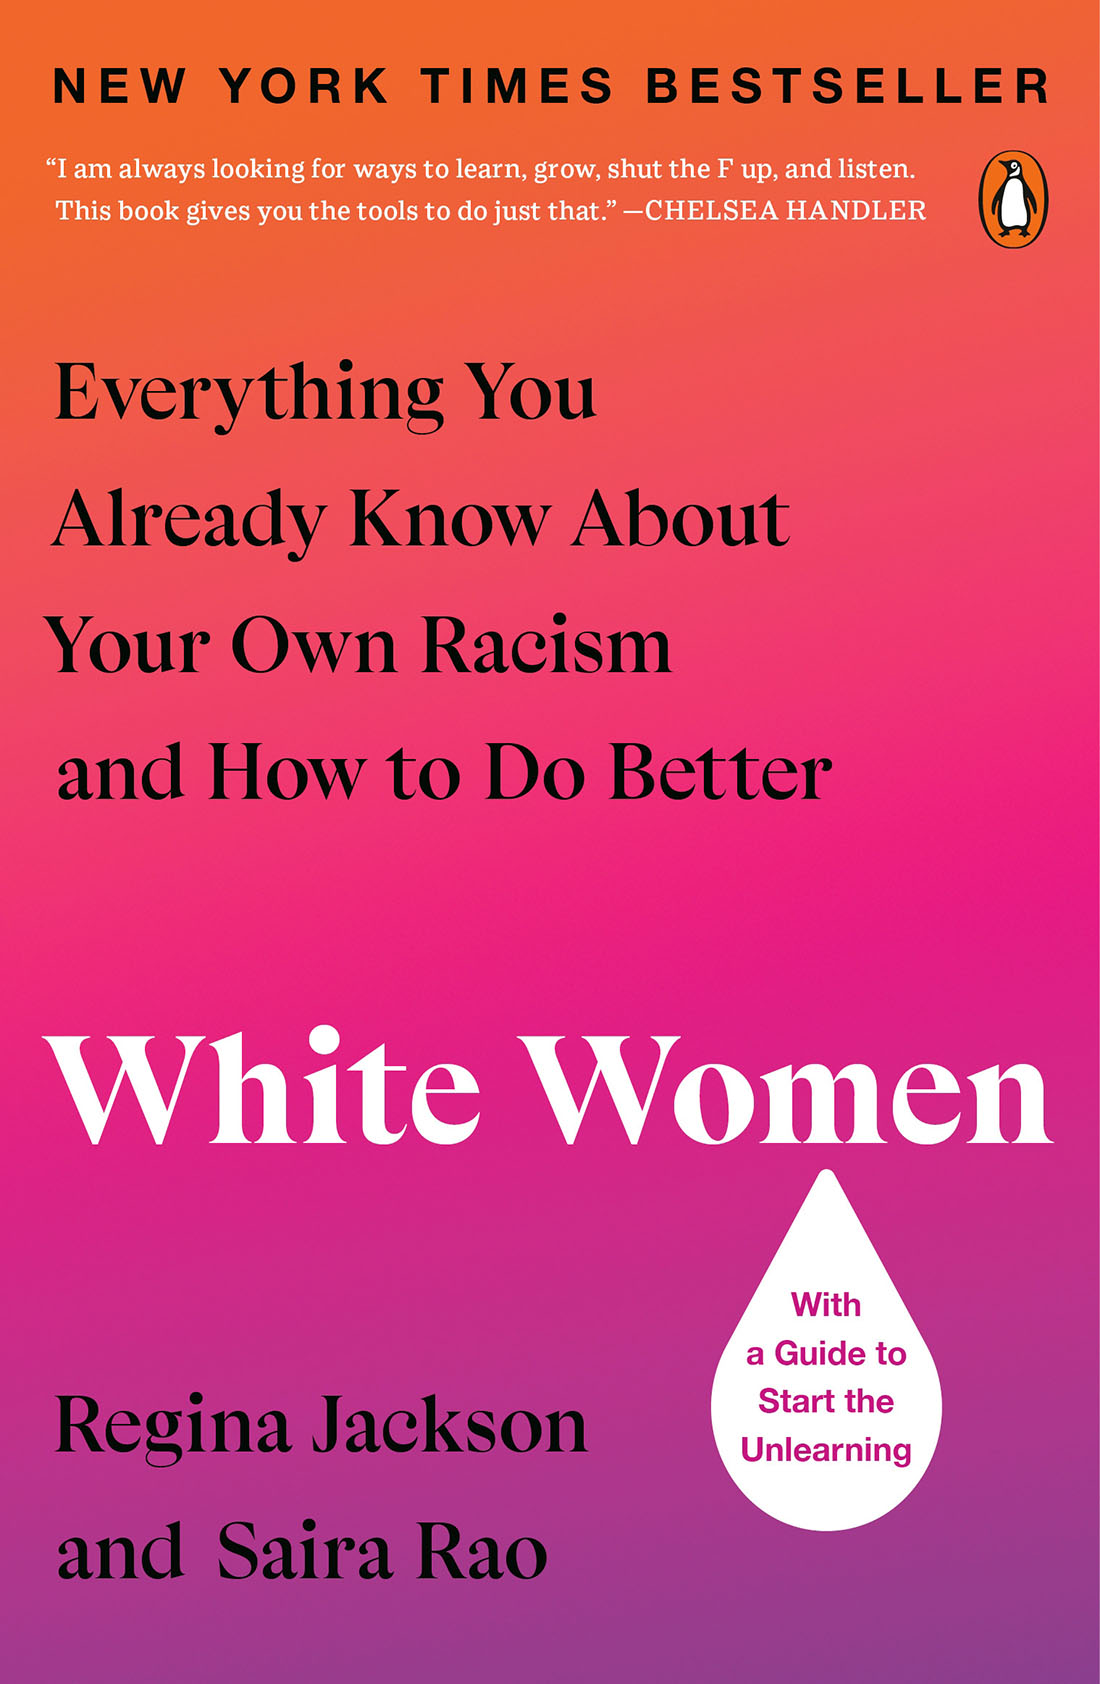 WhiteWomen